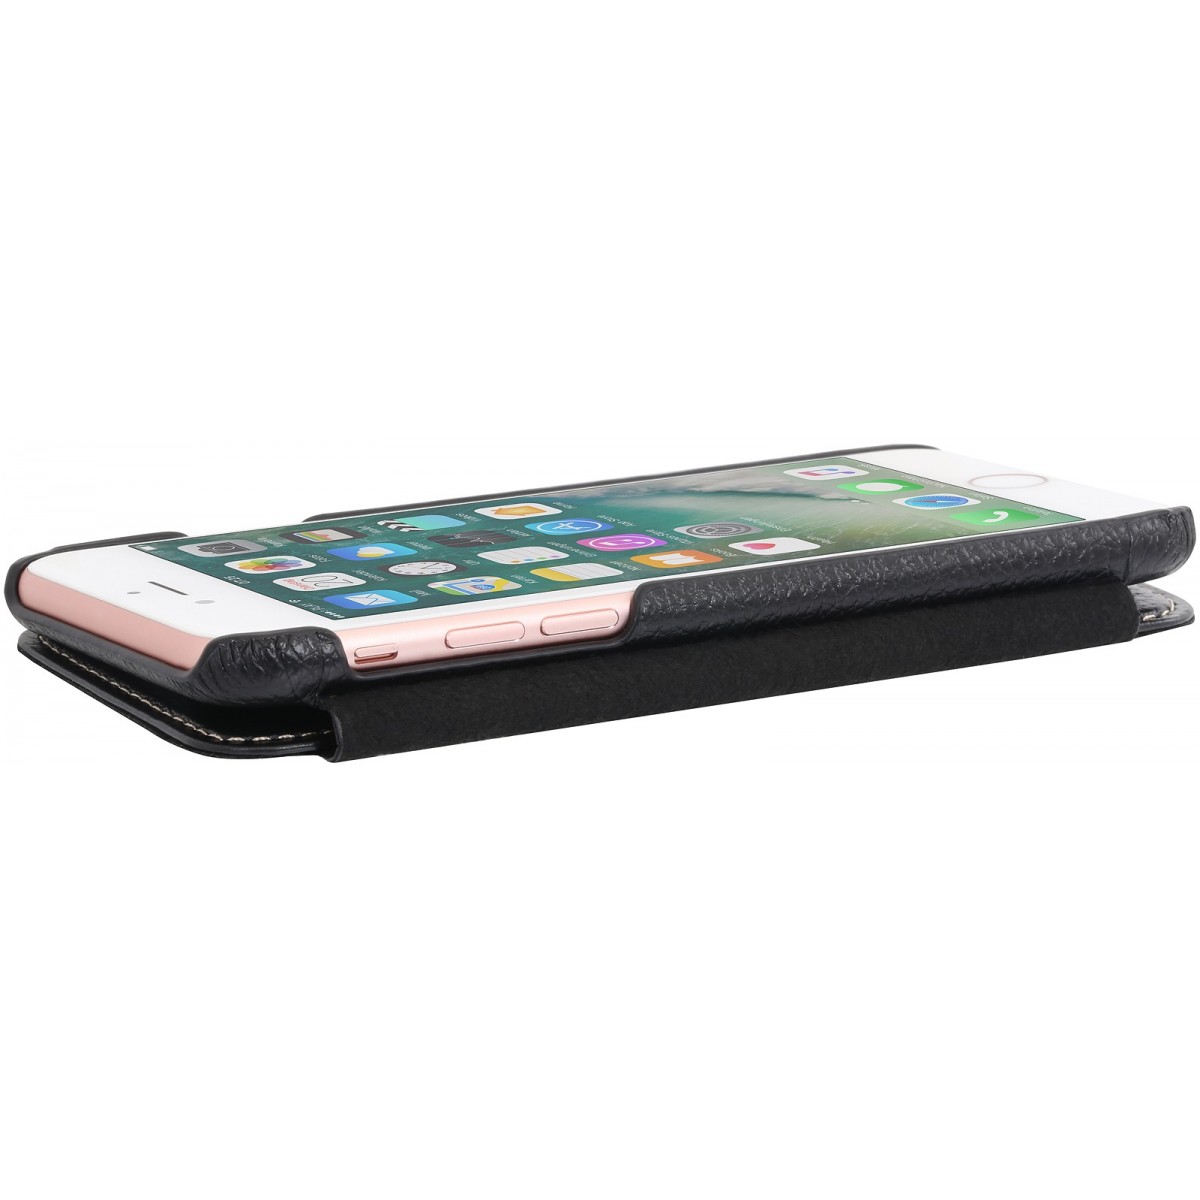 Etui iPhone 7 book type noir en cuir véritable sans clip de fermeture - Stilgut